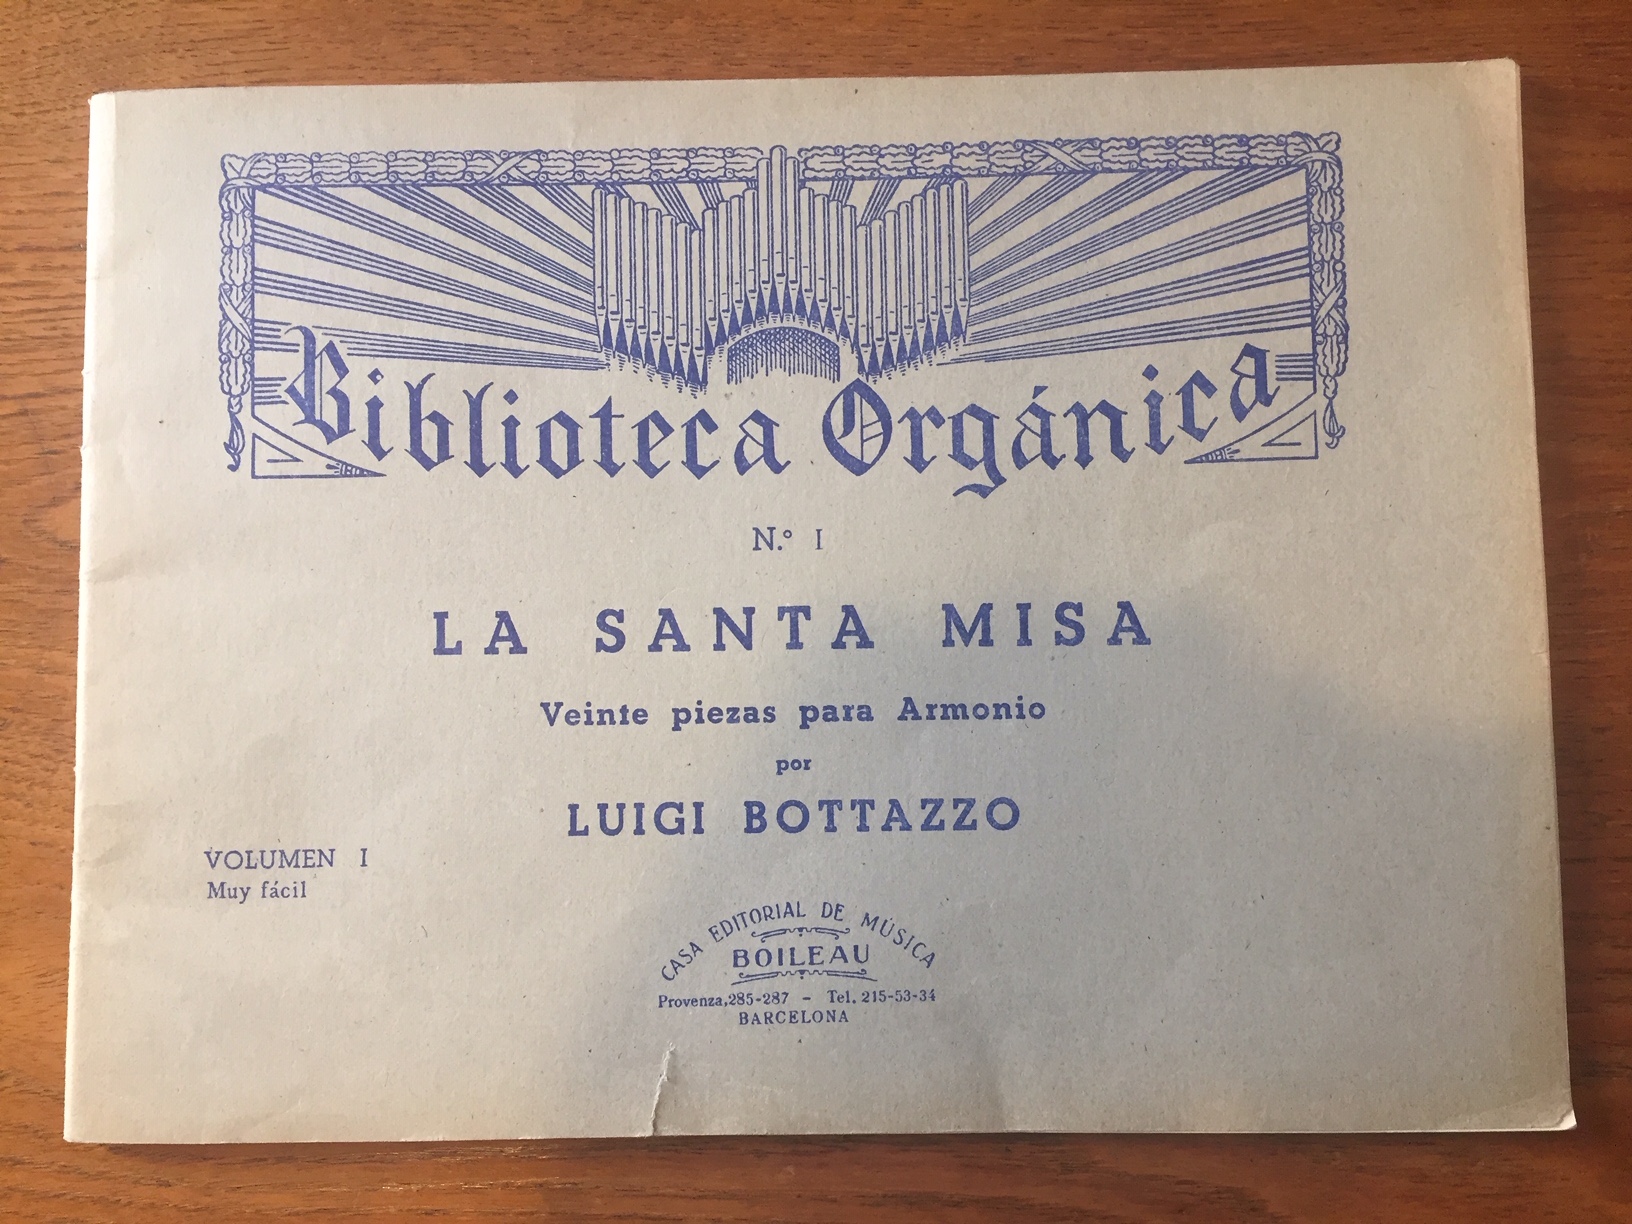 La Santa Misa, Luigi Bottazzo, Volume 1